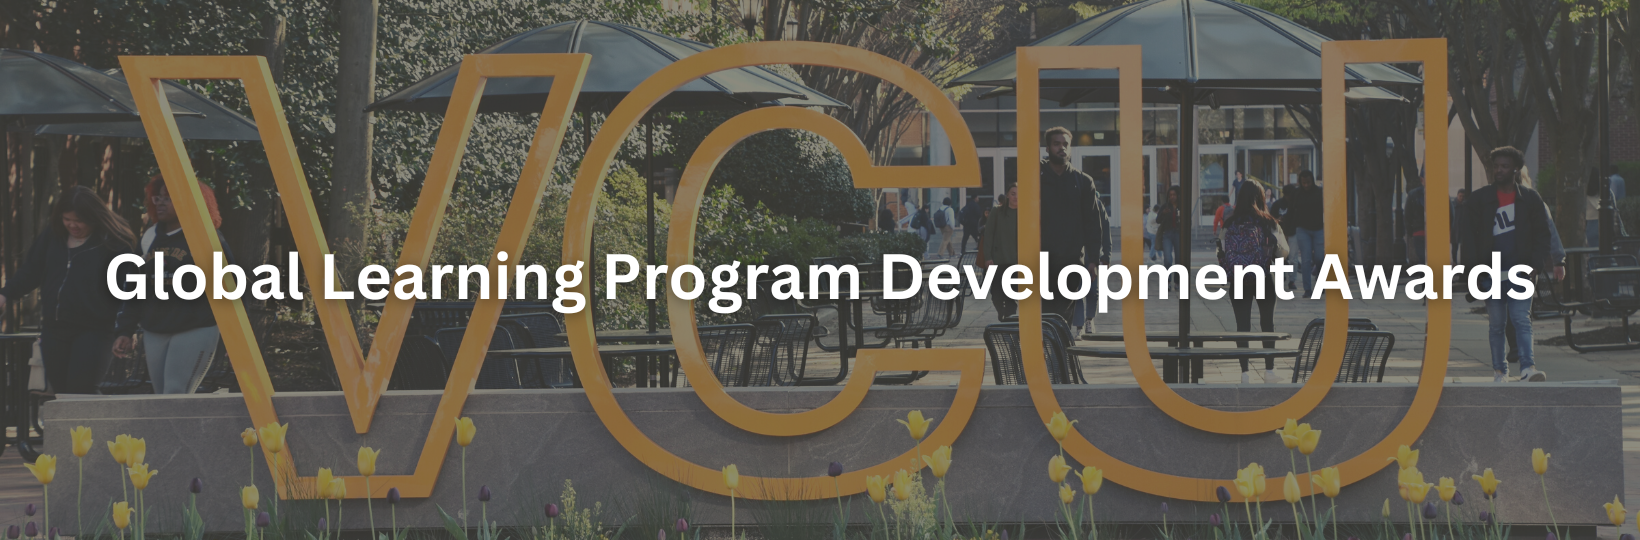 Global Learning Program Development Awards